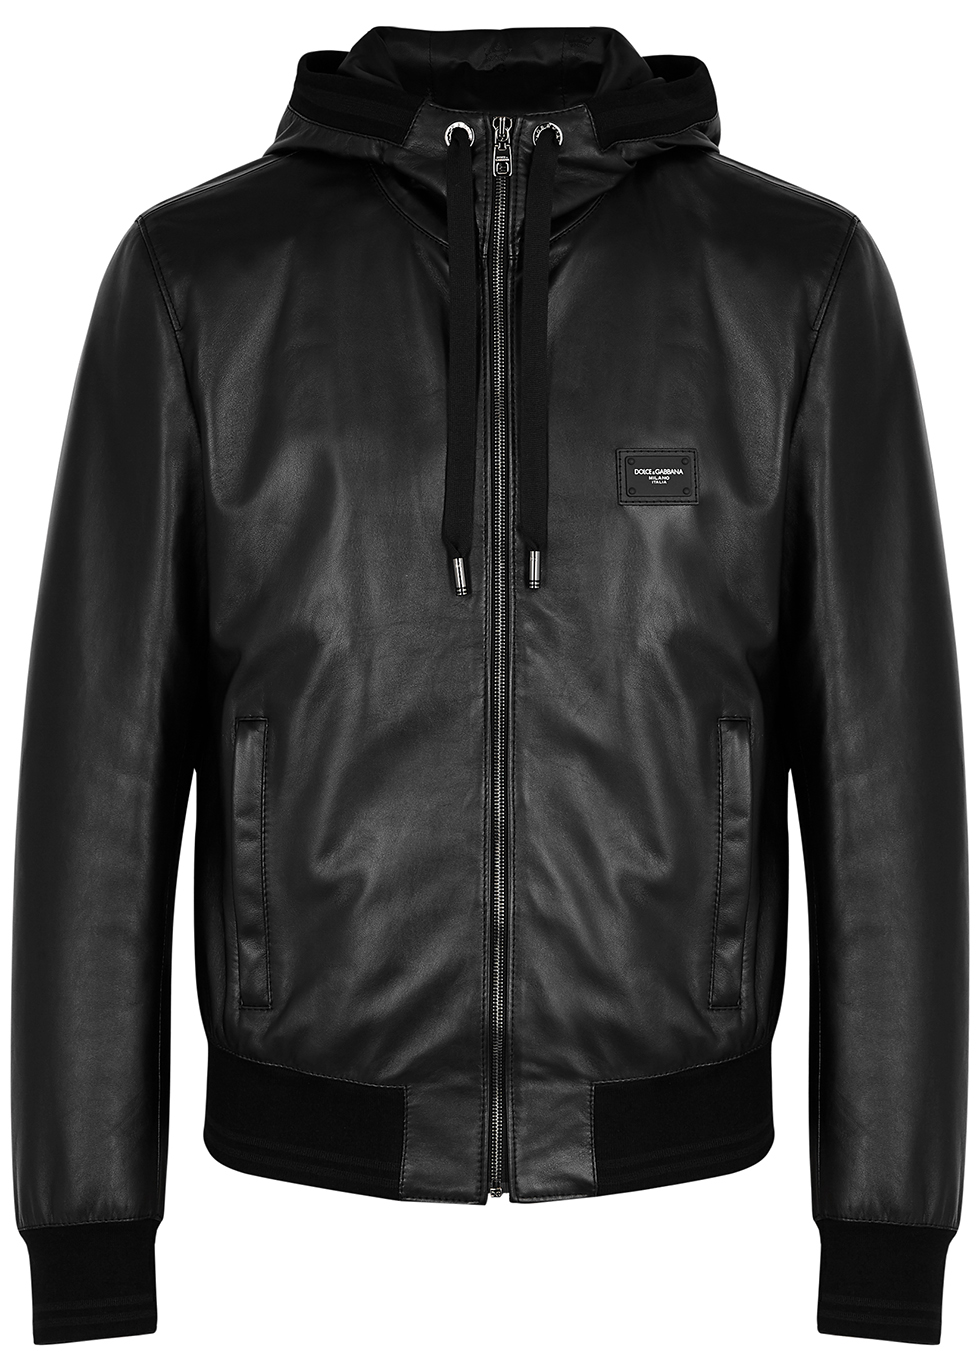 Dolce & Gabbana Multi-pocket Leather Biker Jacket in Black for Men Mens Clothing Jackets Leather jackets Save 8% 